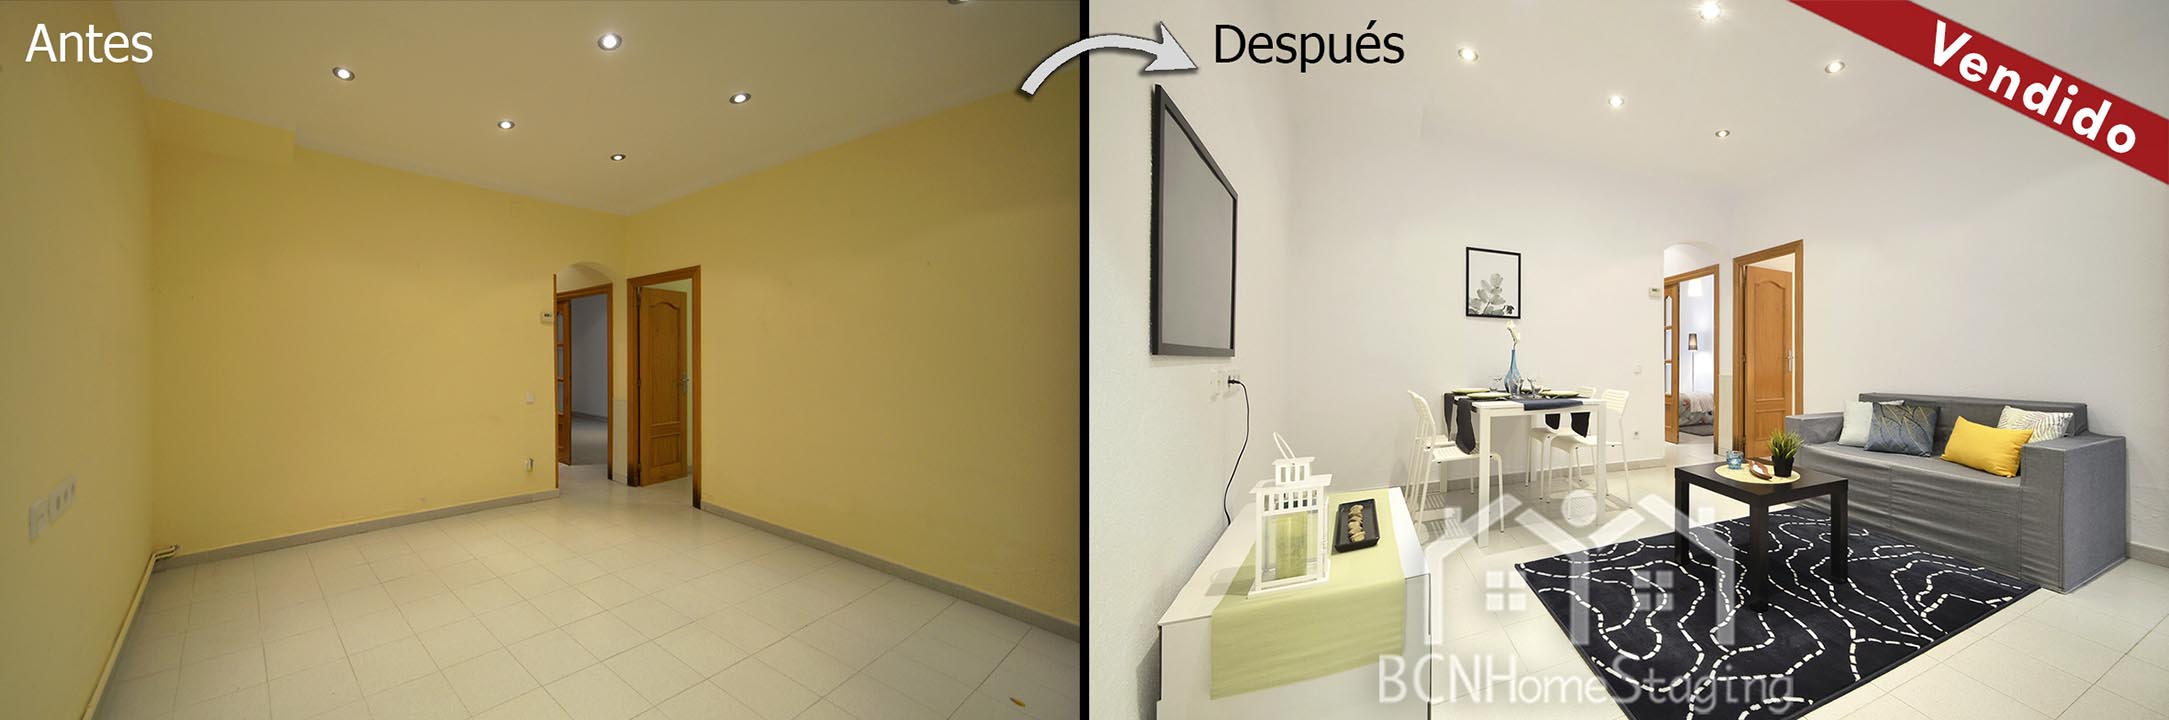 home-staging-barcelona-dormitorio-muebles-cartón